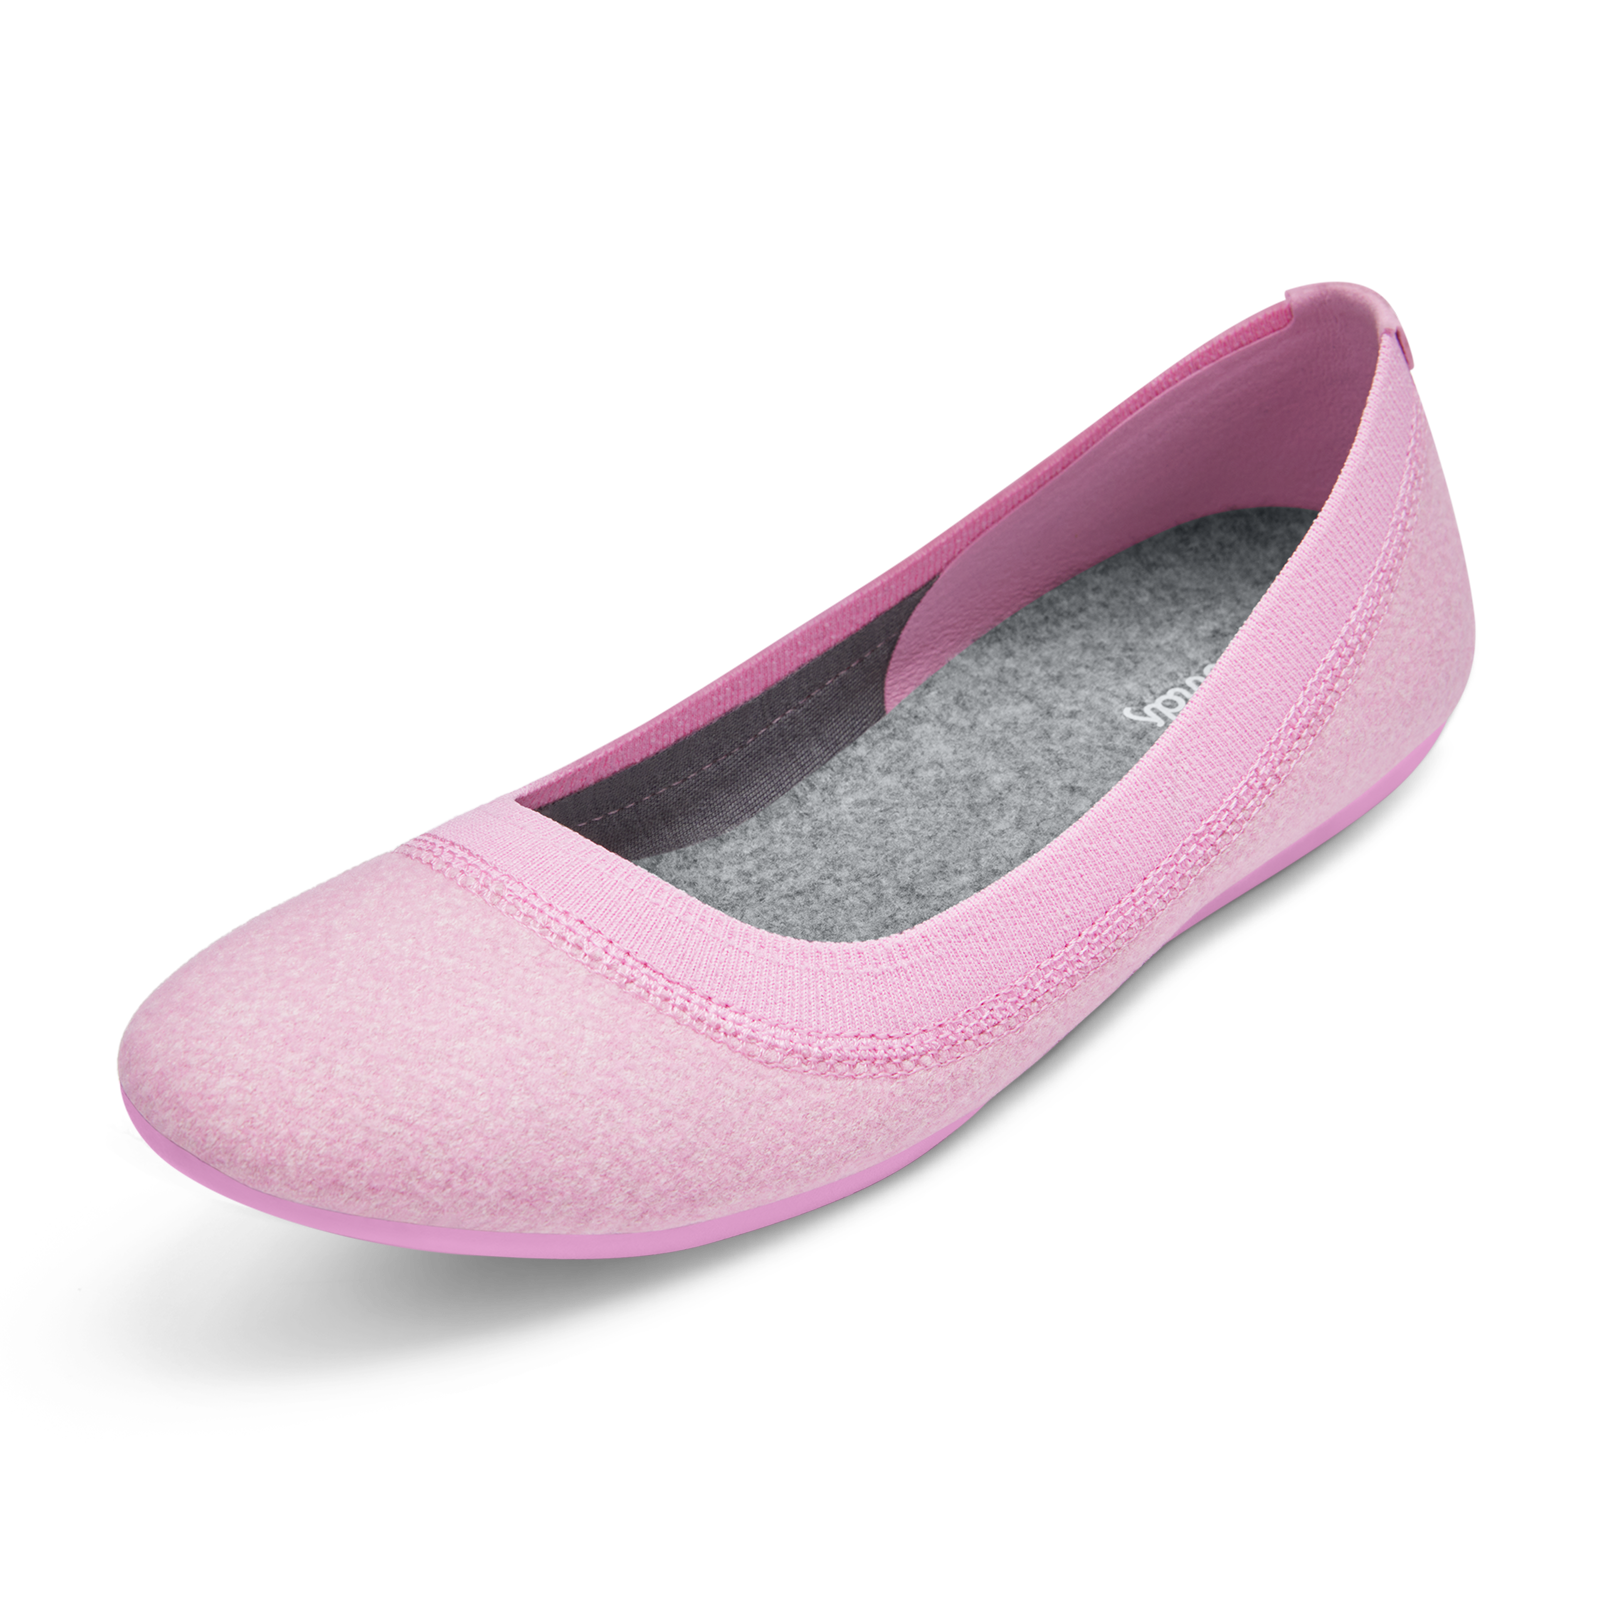 Women's Wool Breezers - Buoyant Pink (Buoyant Pink Sole)